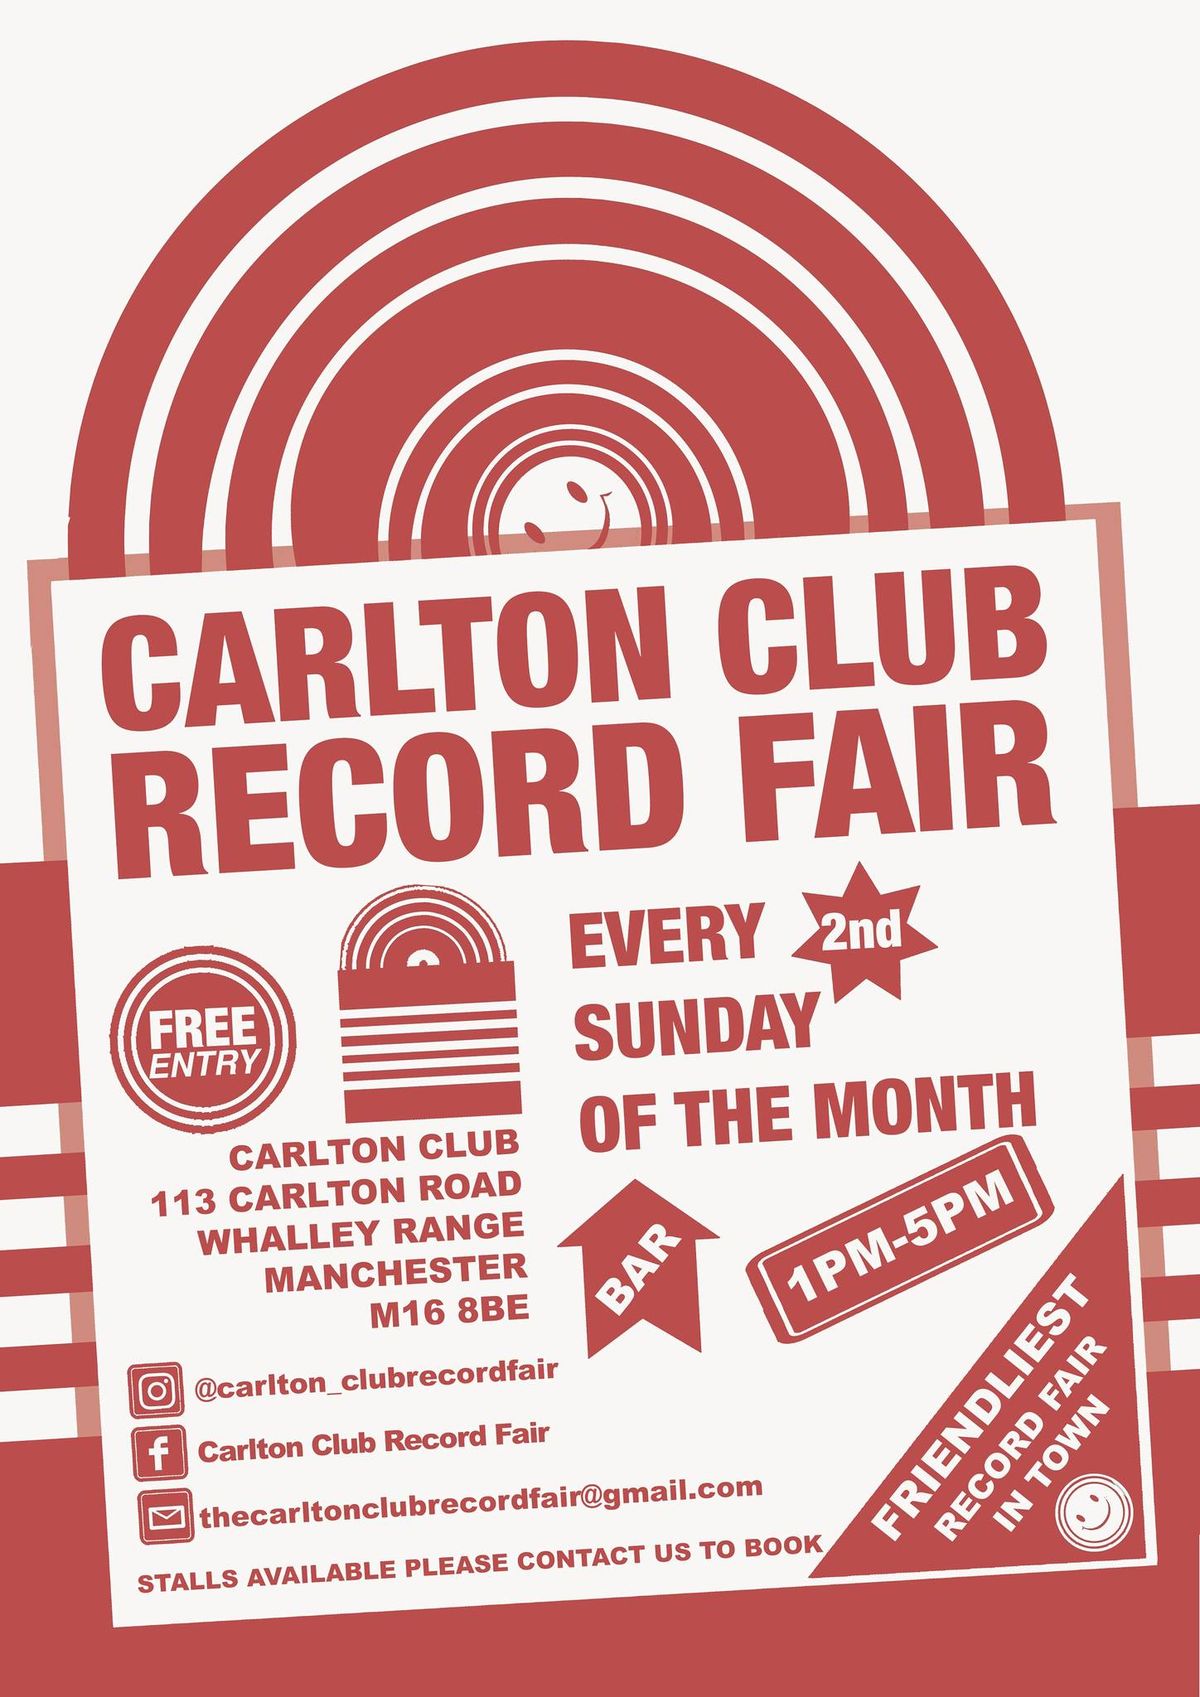 Carlton Club Record Fair